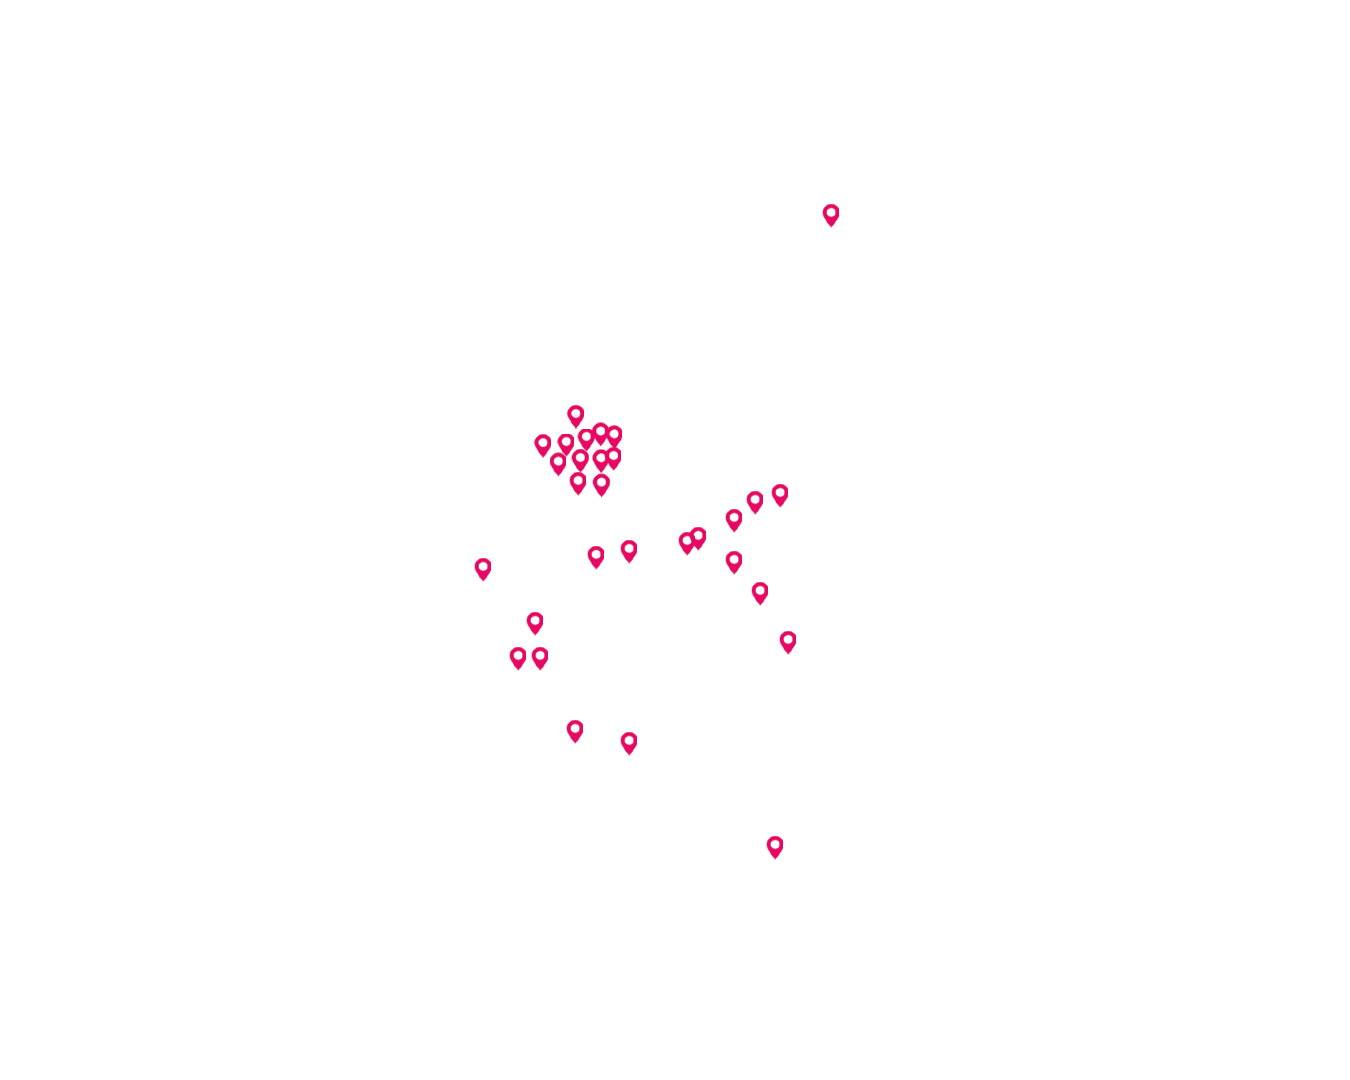 Landkaart Nederland levering warmte door Essent